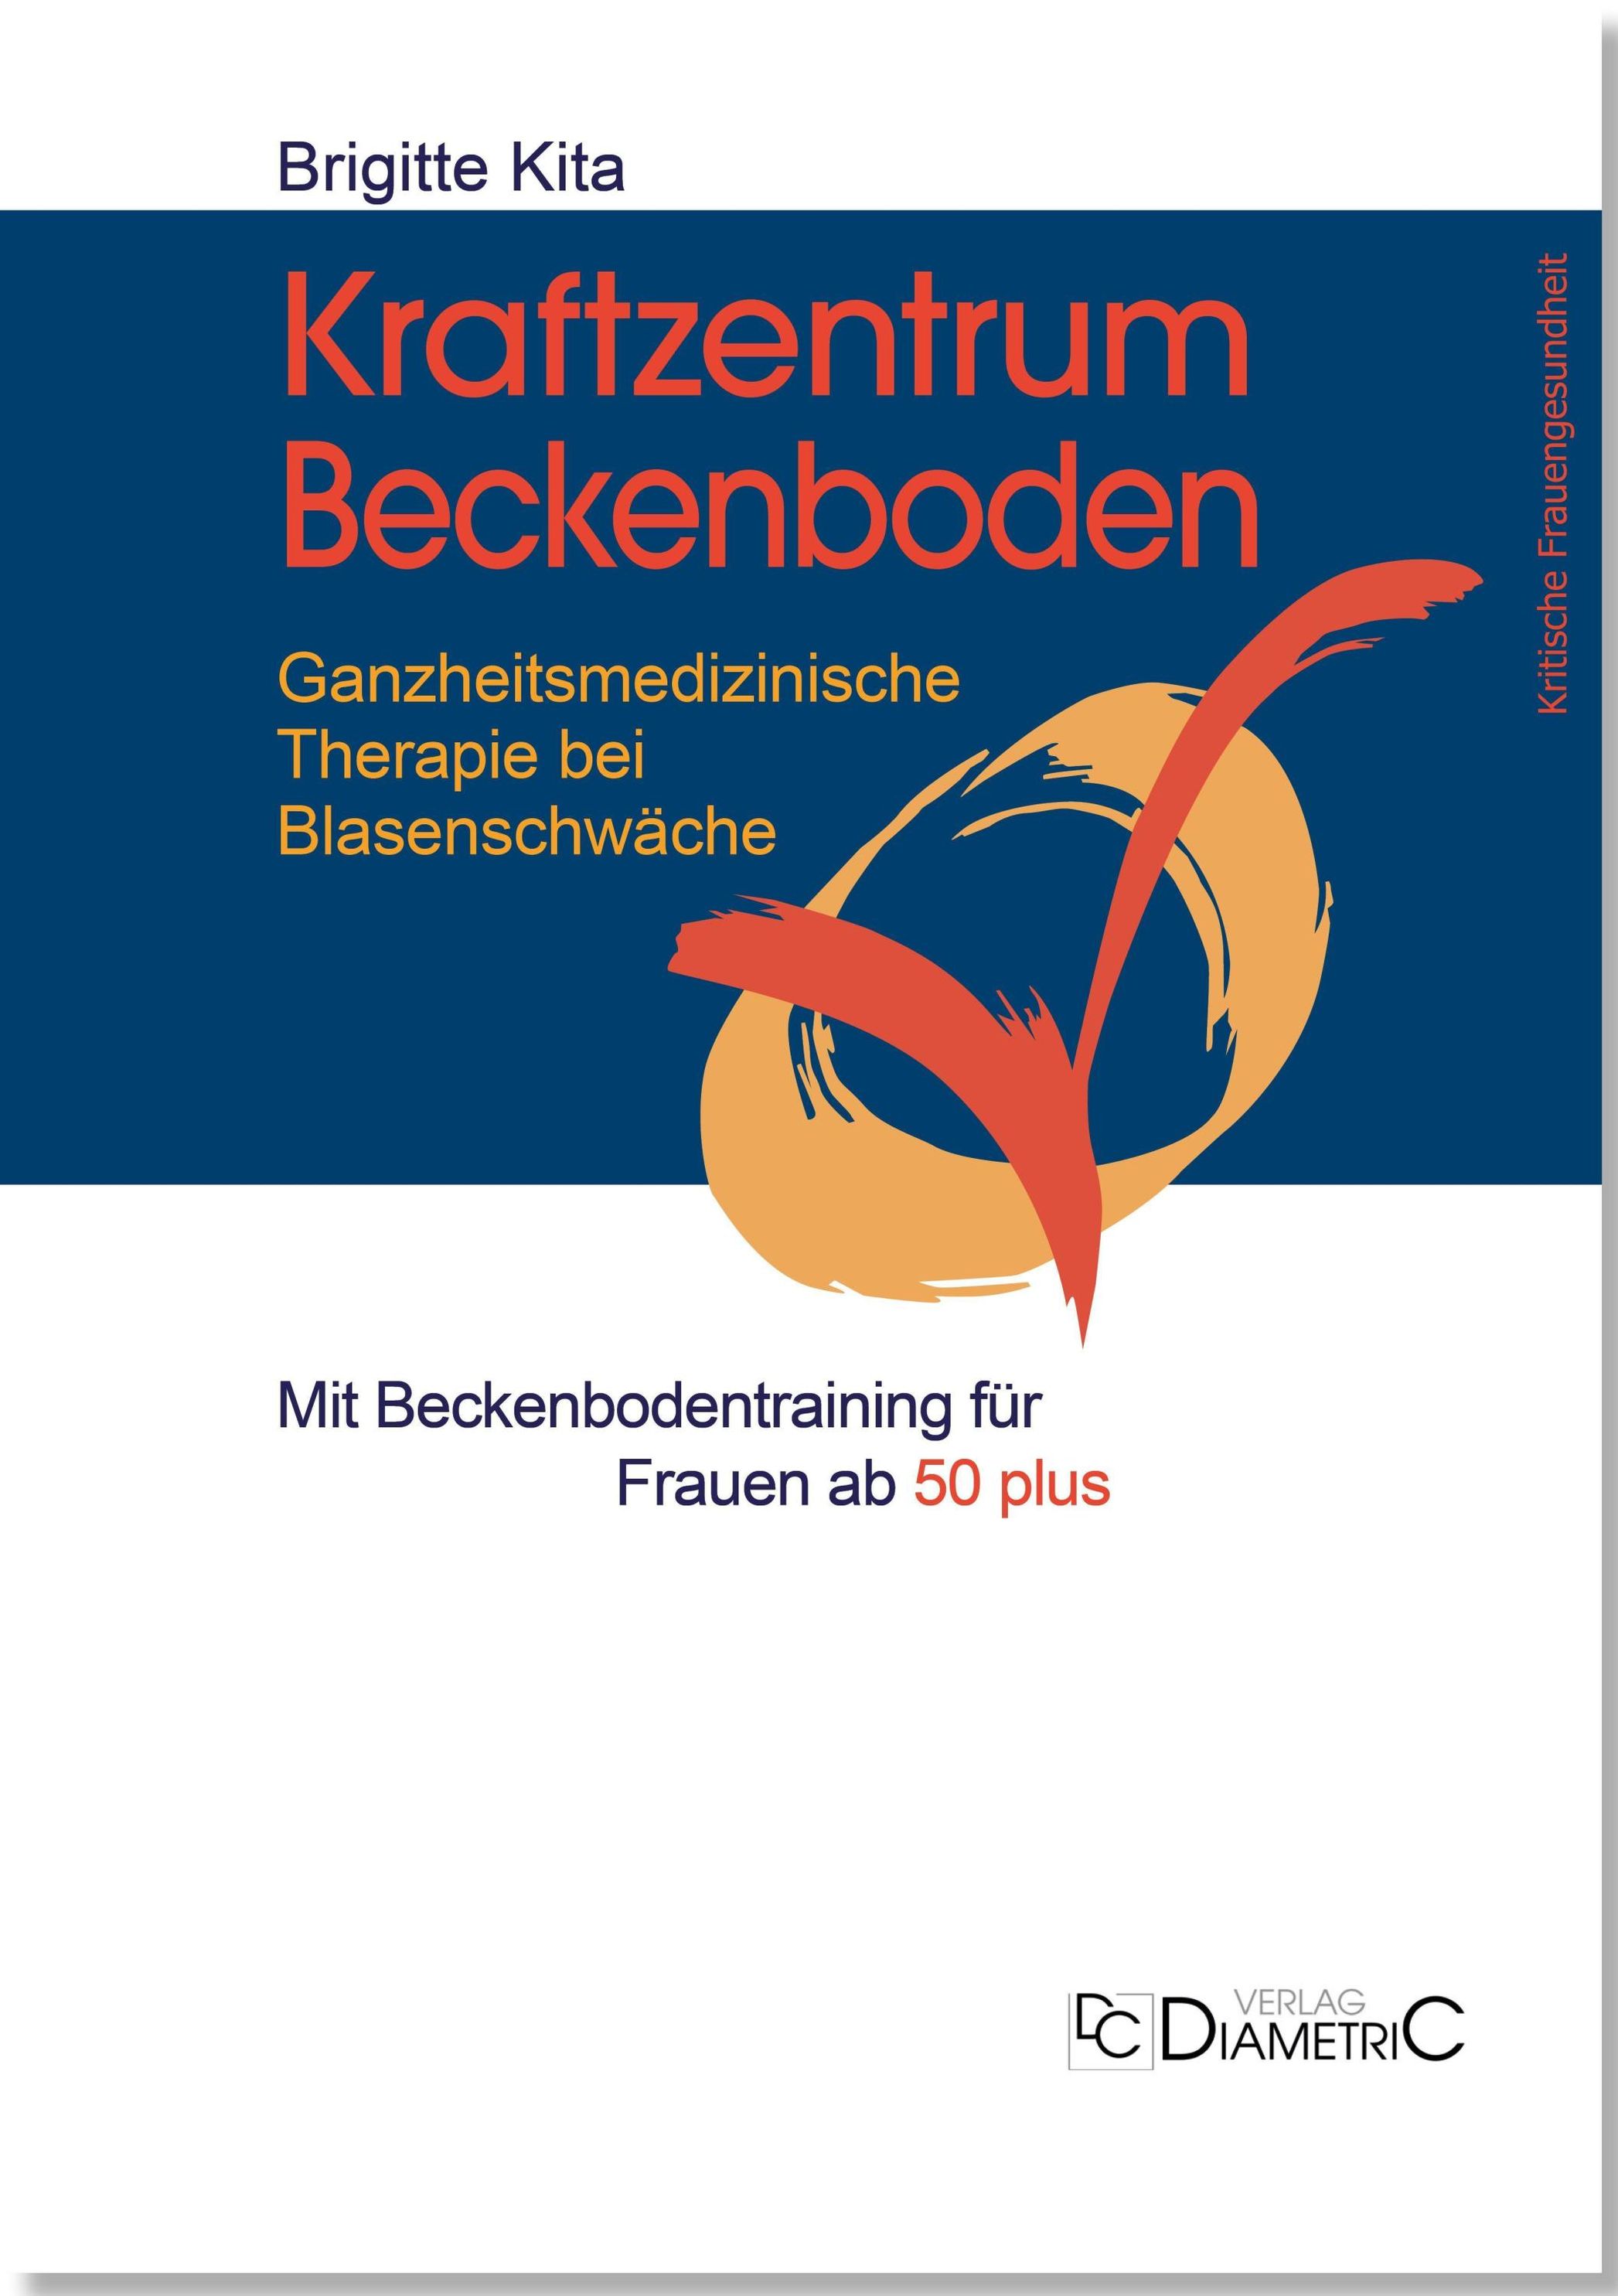 Kraftzentrum Beckenboden: Ganzheitsmedizinische Therapie bei Blasenschwäche  mit Beckenbodentraining für Frauen ab 50 plu Buch